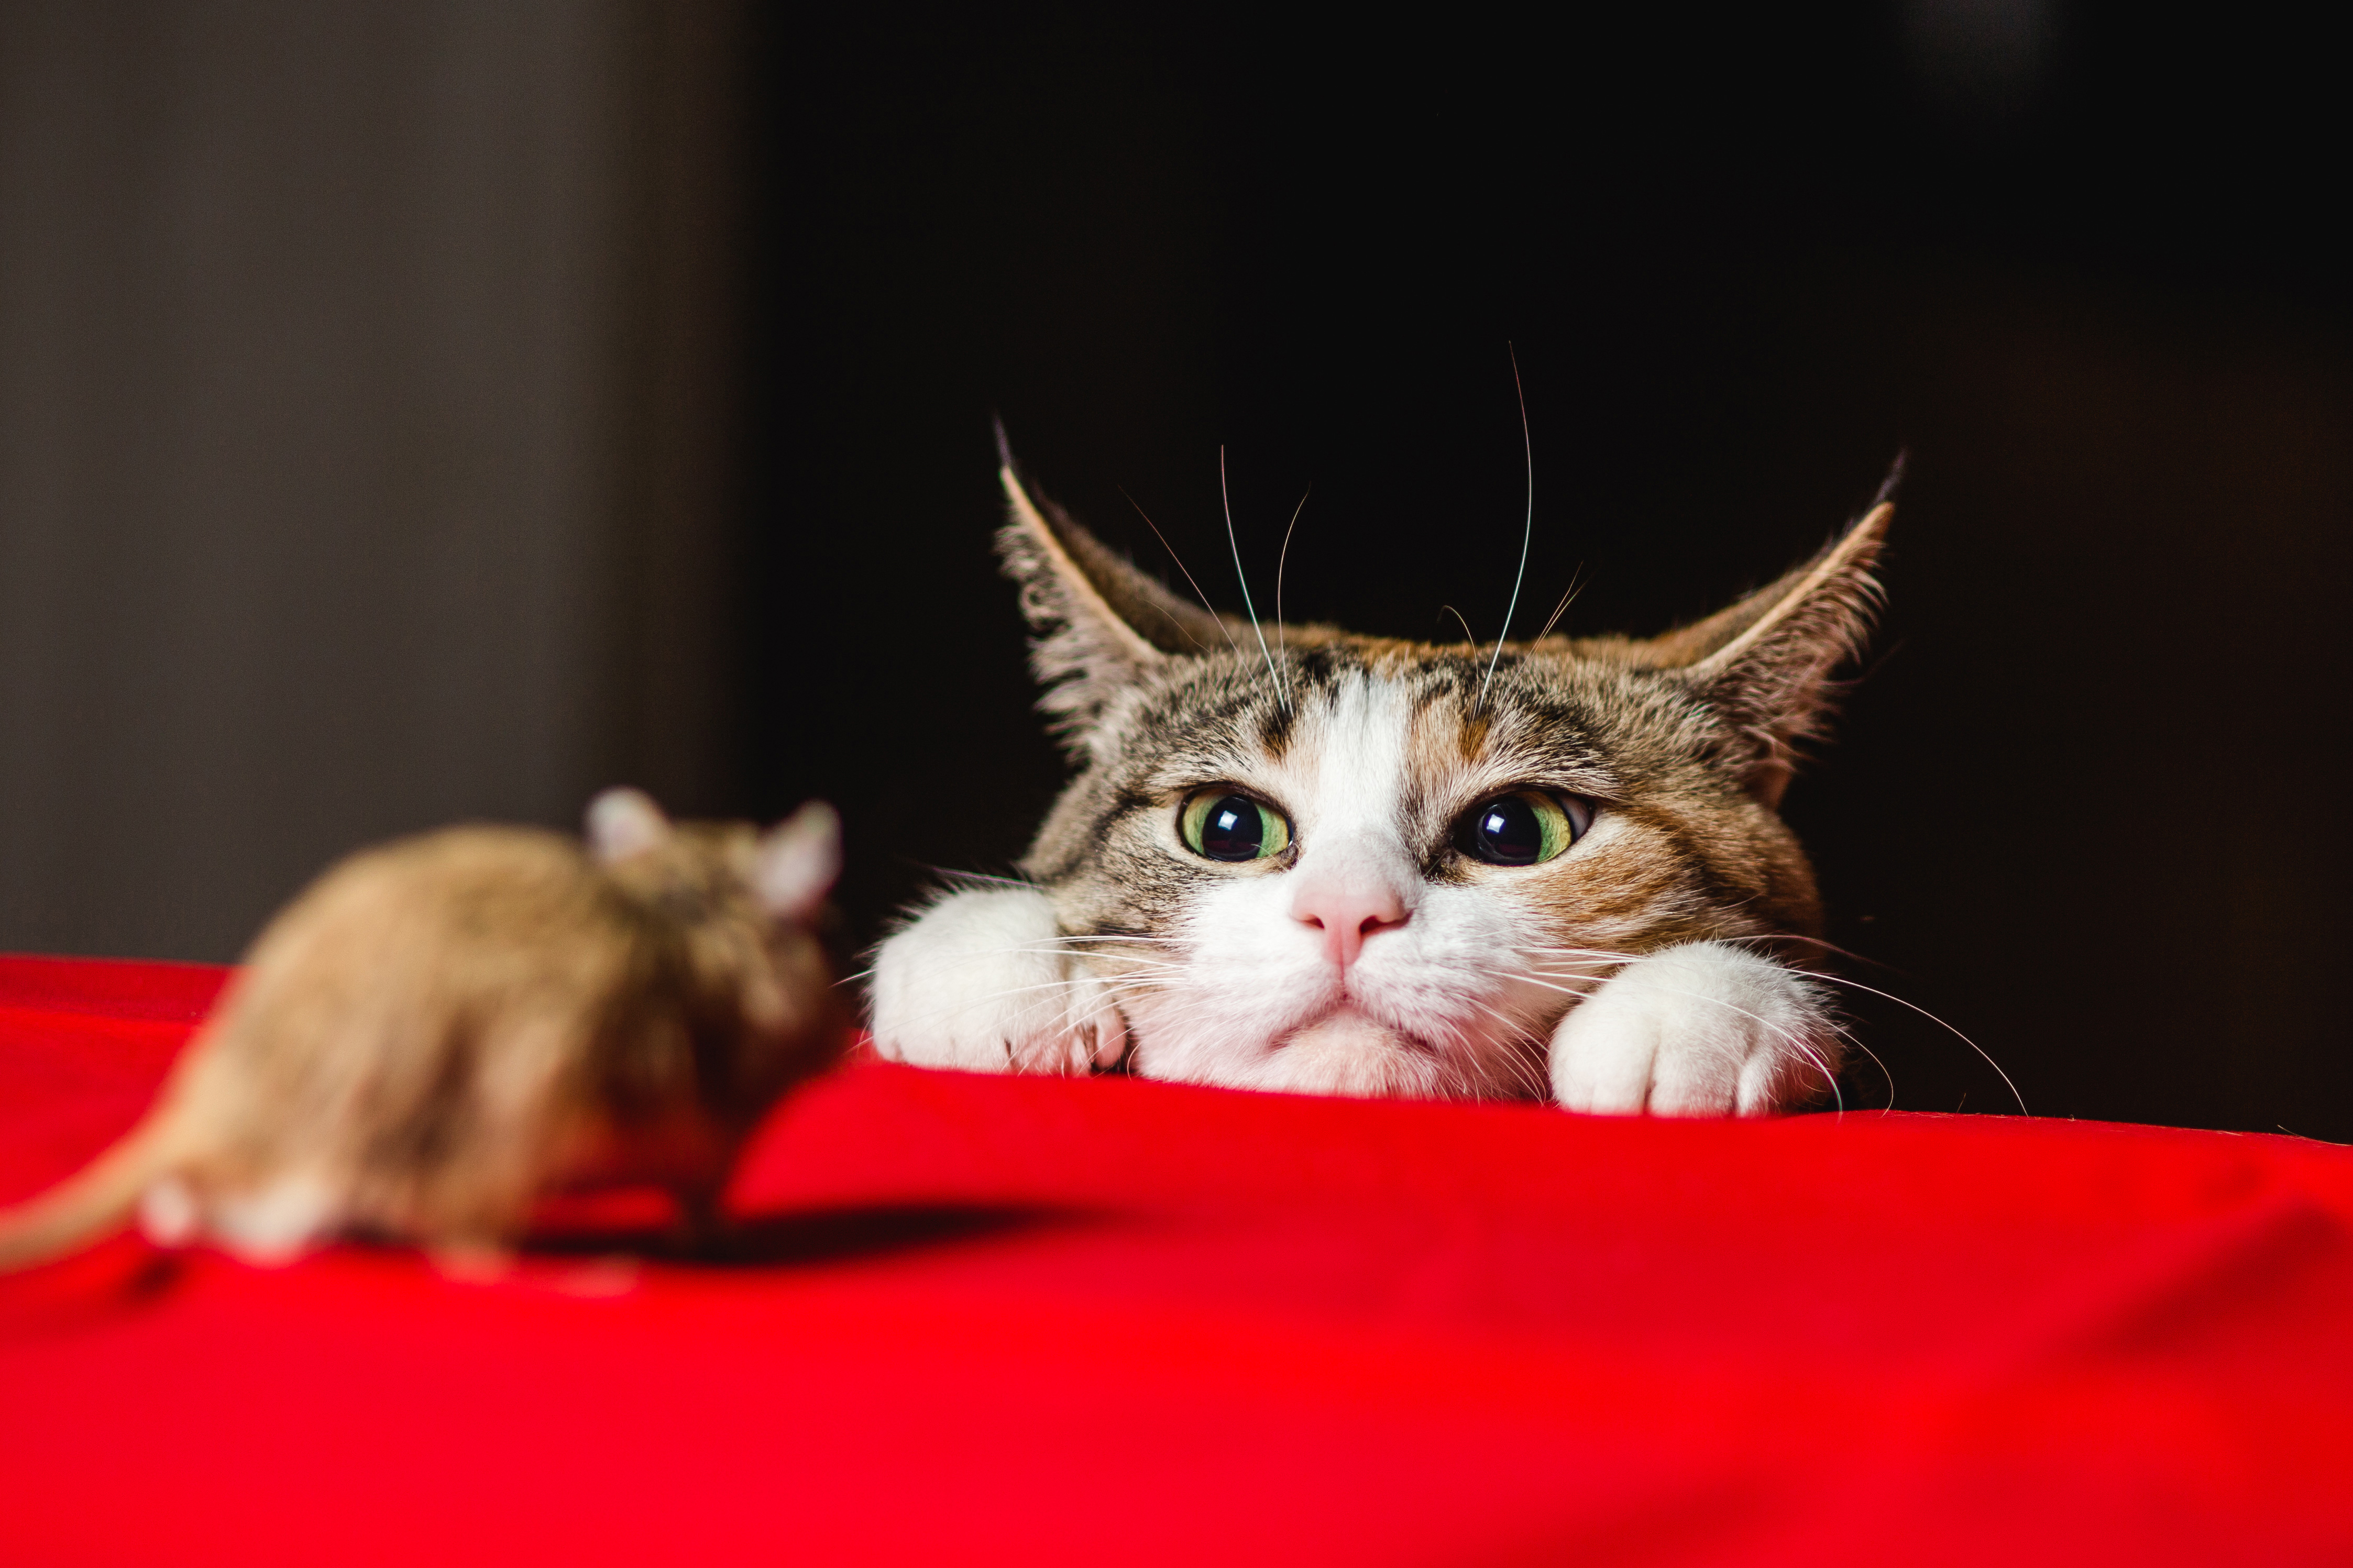 ネズミ駆除で1番効果があるのは猫を飼うことってホント 猫はネズミを食べるのか 株式会社ミナト 害獣 害虫駆除